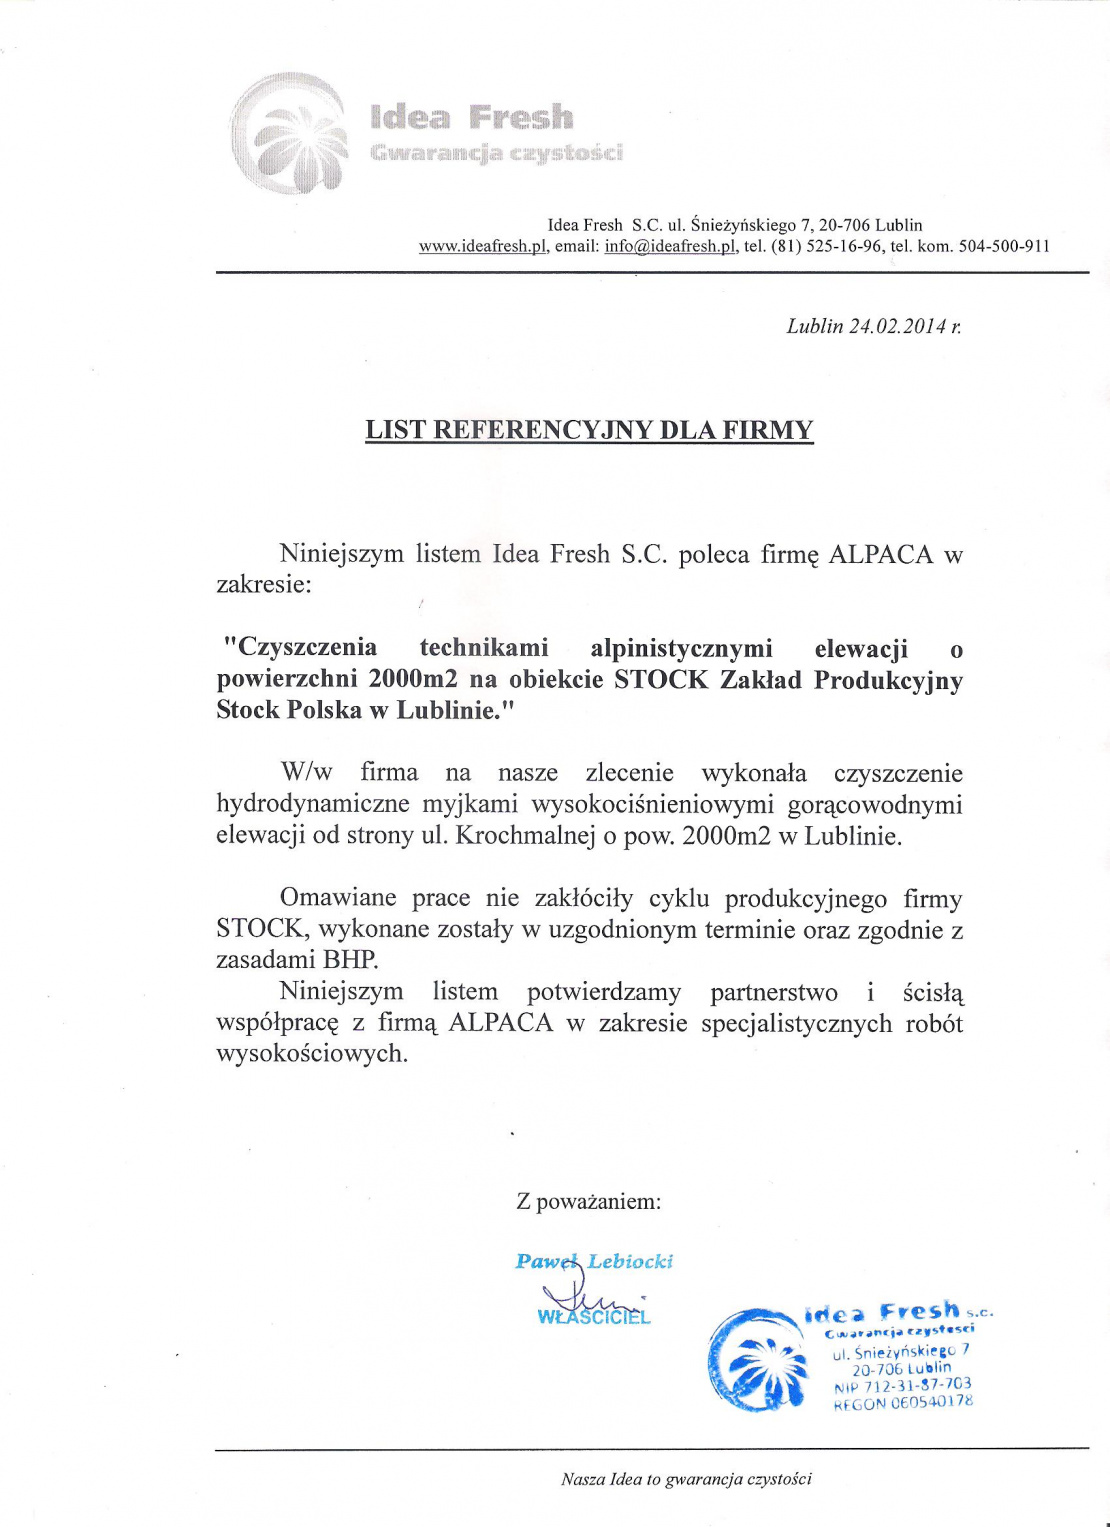 List referencyjny dotyczący mycia elewacji zewnętrznej hali produkcyjnej firmy STOCK w Lublinie.